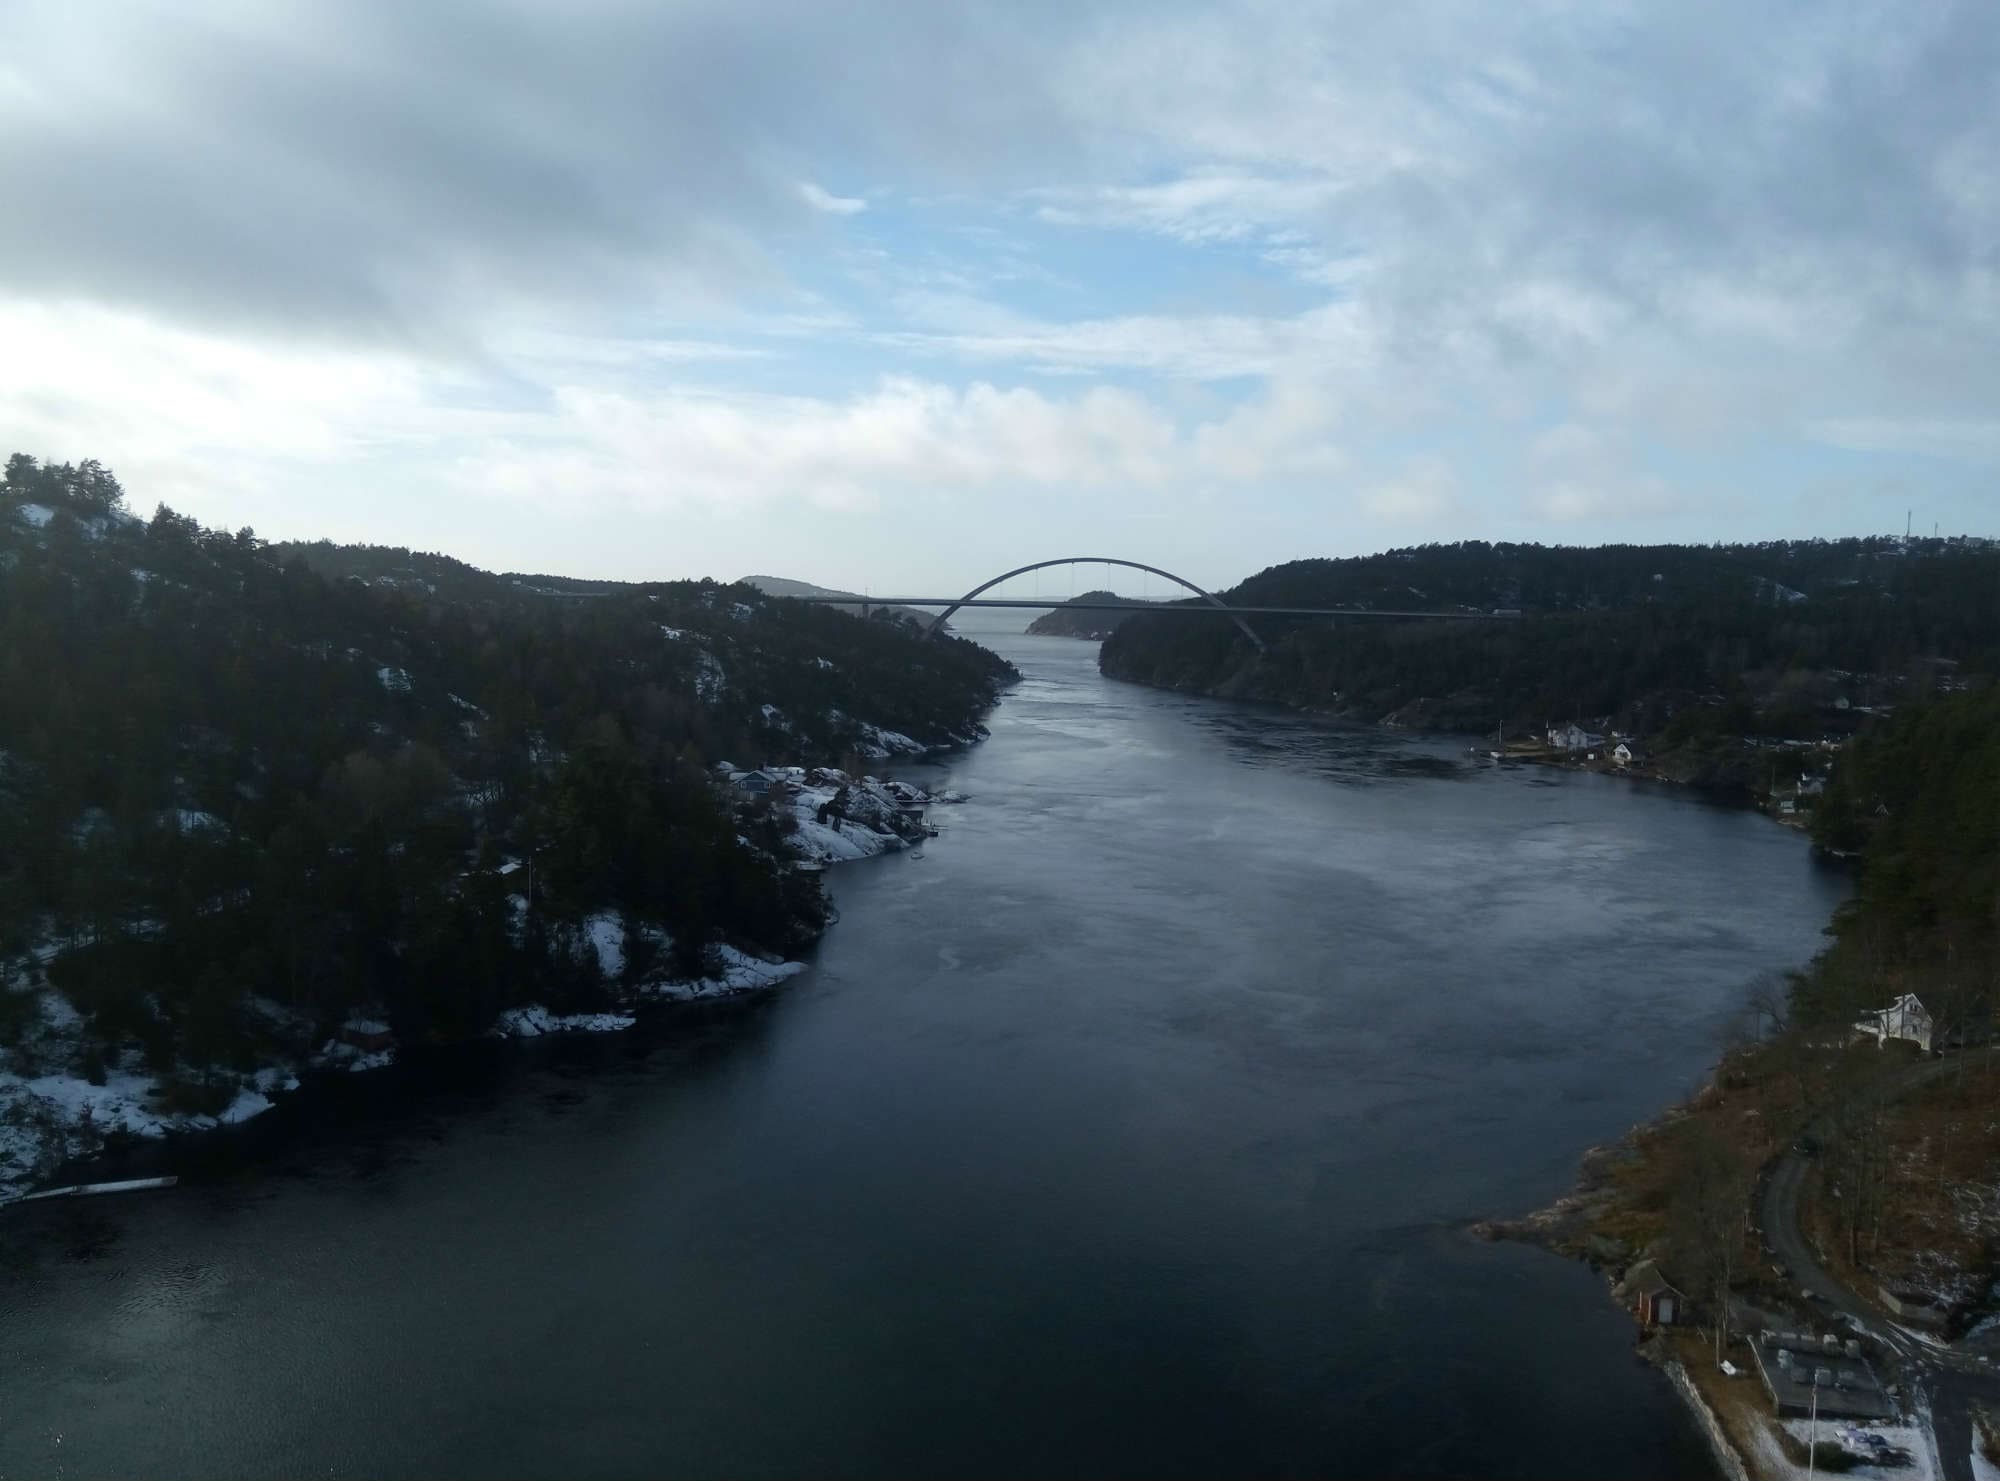 Norwegian-Swedish border